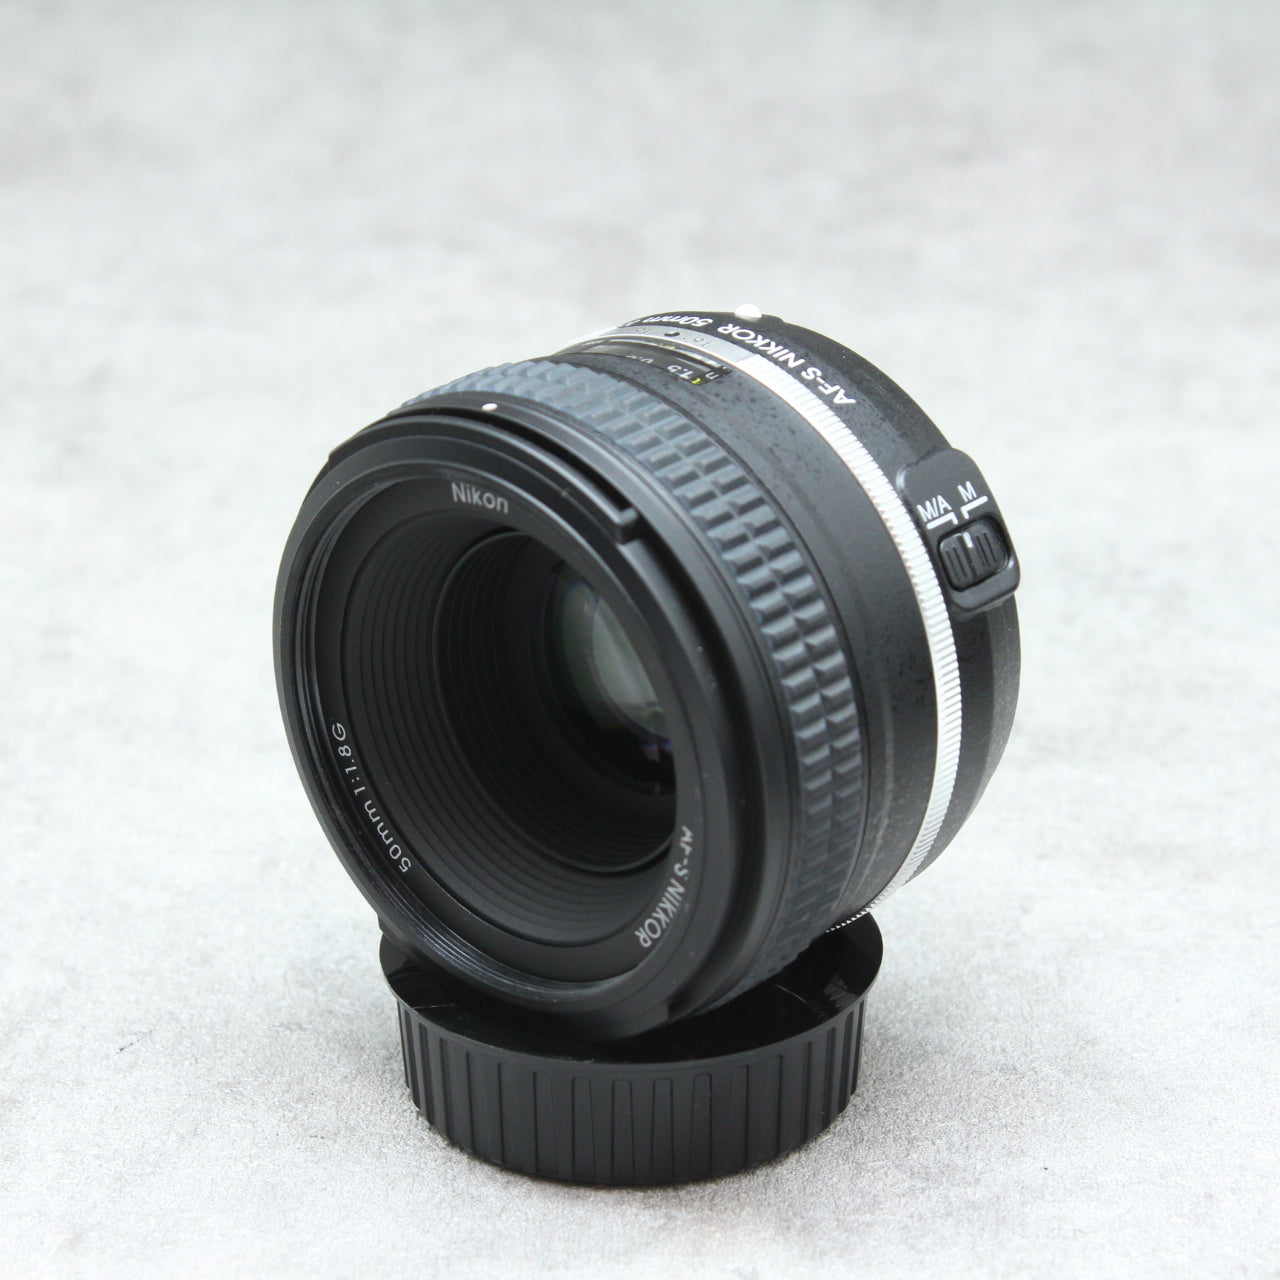 中古品 Nikon Df 50mm f/1.8G Special Editionキット BK【11月19日(土